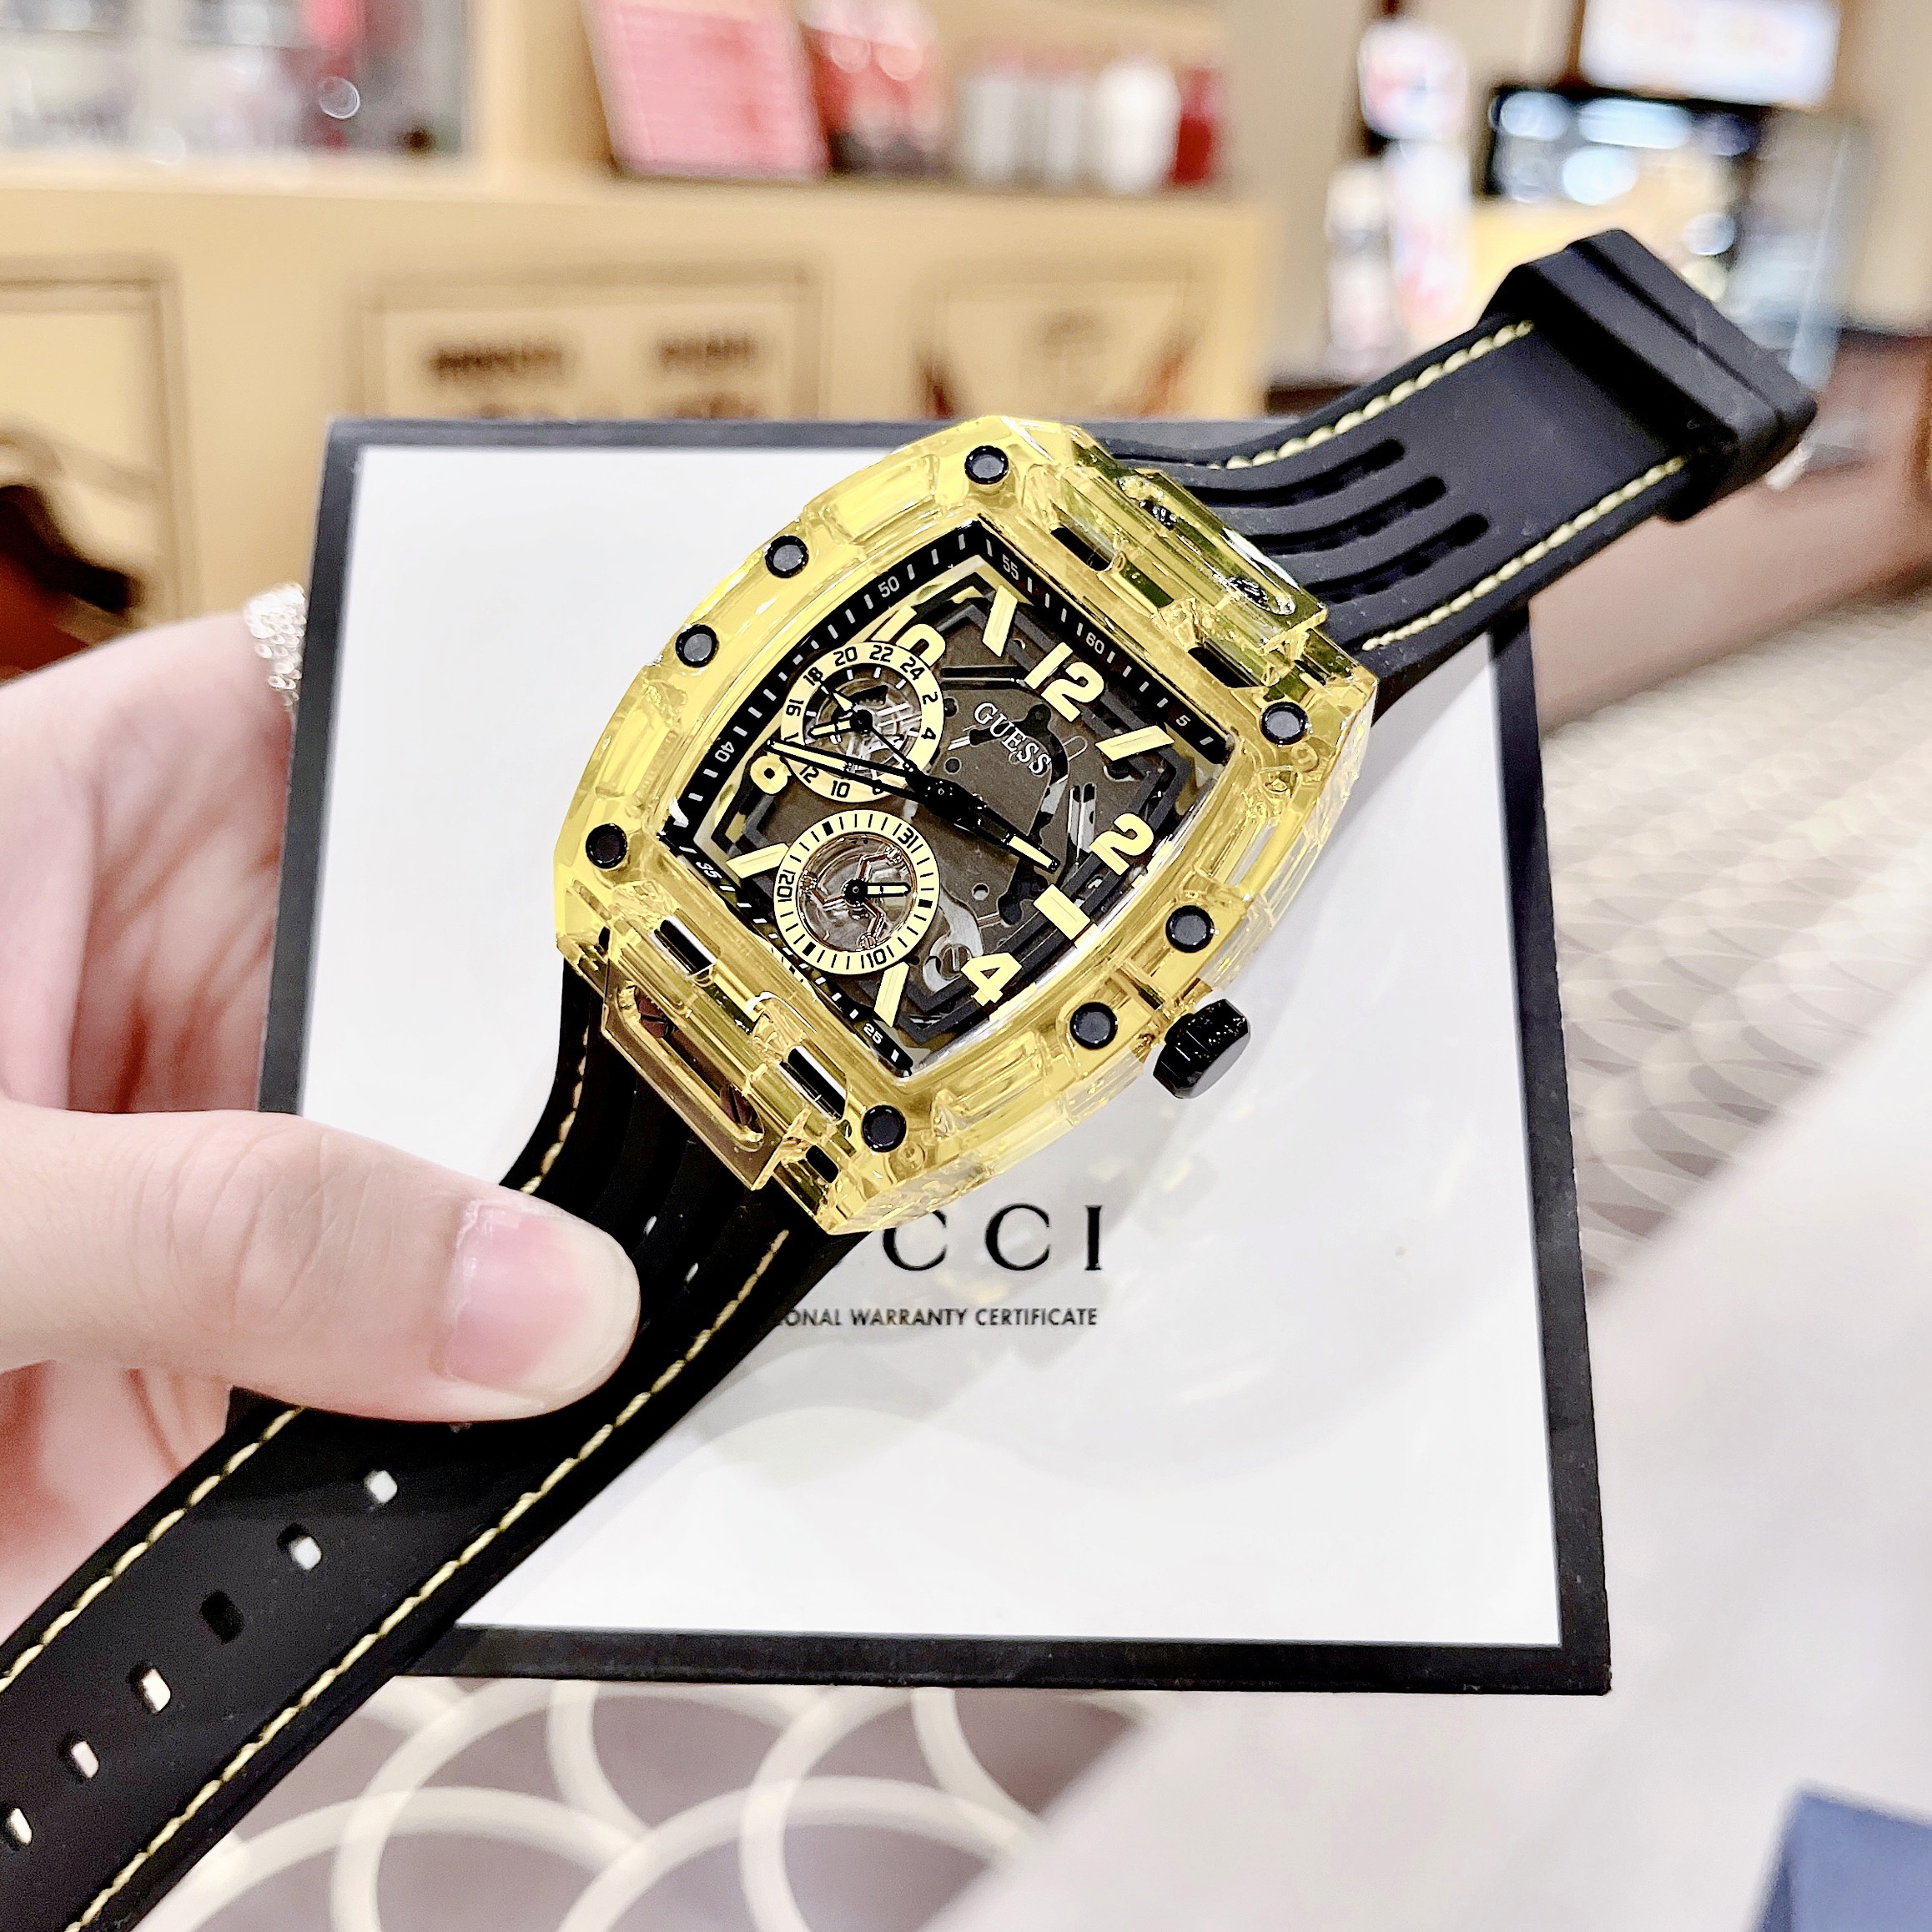 Đồng hồ nam đeo tay thời trang chống nước dây cao su GUE$$ GW0499G1 GW0499G2 GW0499G3 mạ carbon size 43 x 51mm fullbox , vỏ thép không gỉ , cao cấp sang trọng , shop kiwi